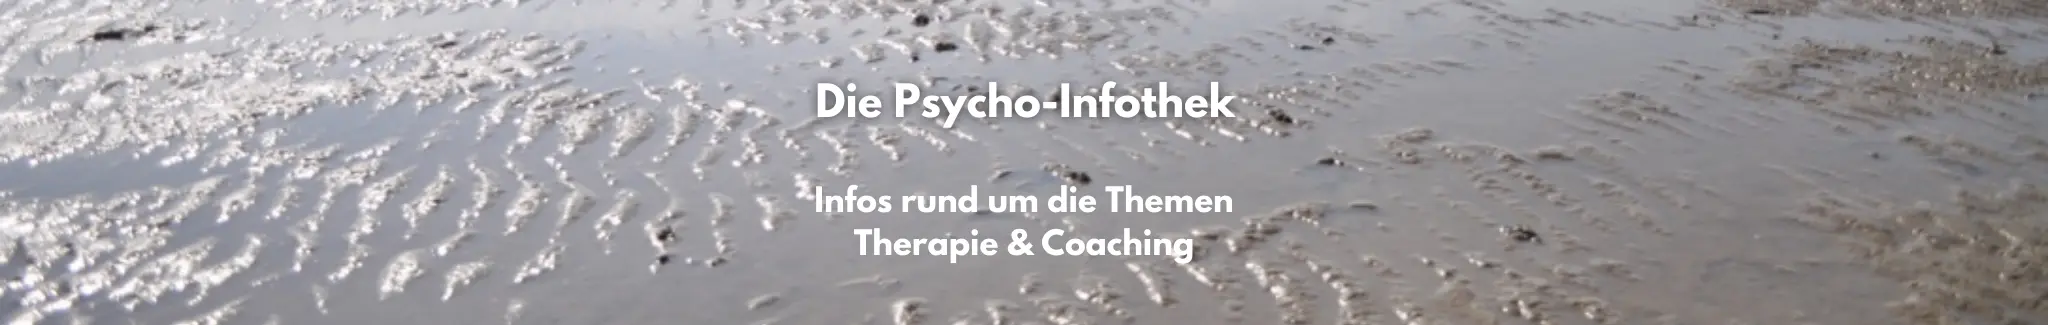 Definition Psychotherapie